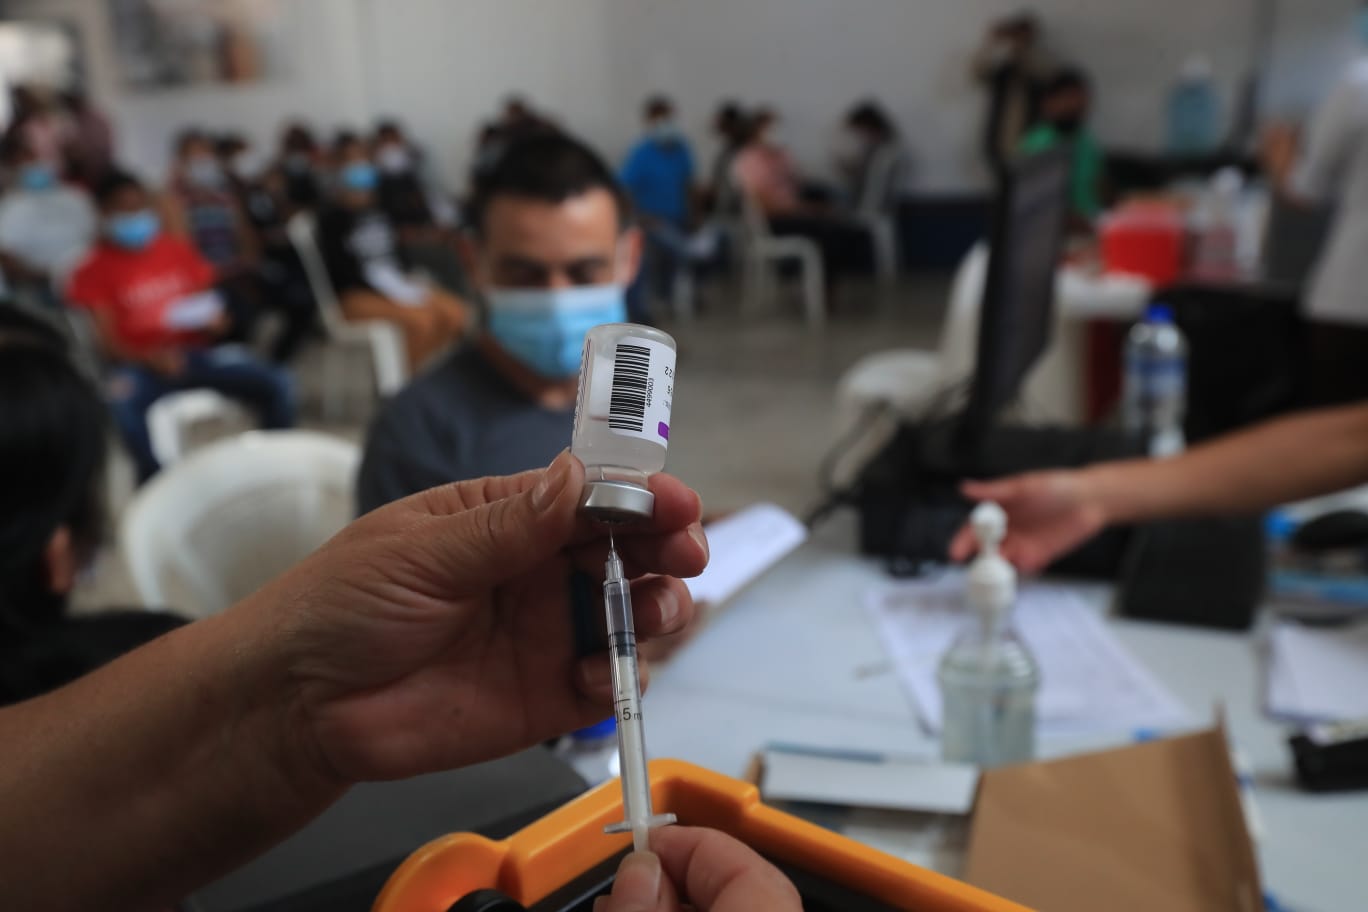 El Ministerio de Salud anunció las jornadas de vacunación empresarial como una nueva estrategia para continuar con la inmunización contra el coronavirus. (Foto Prensa Libre: Élmer Vargas)